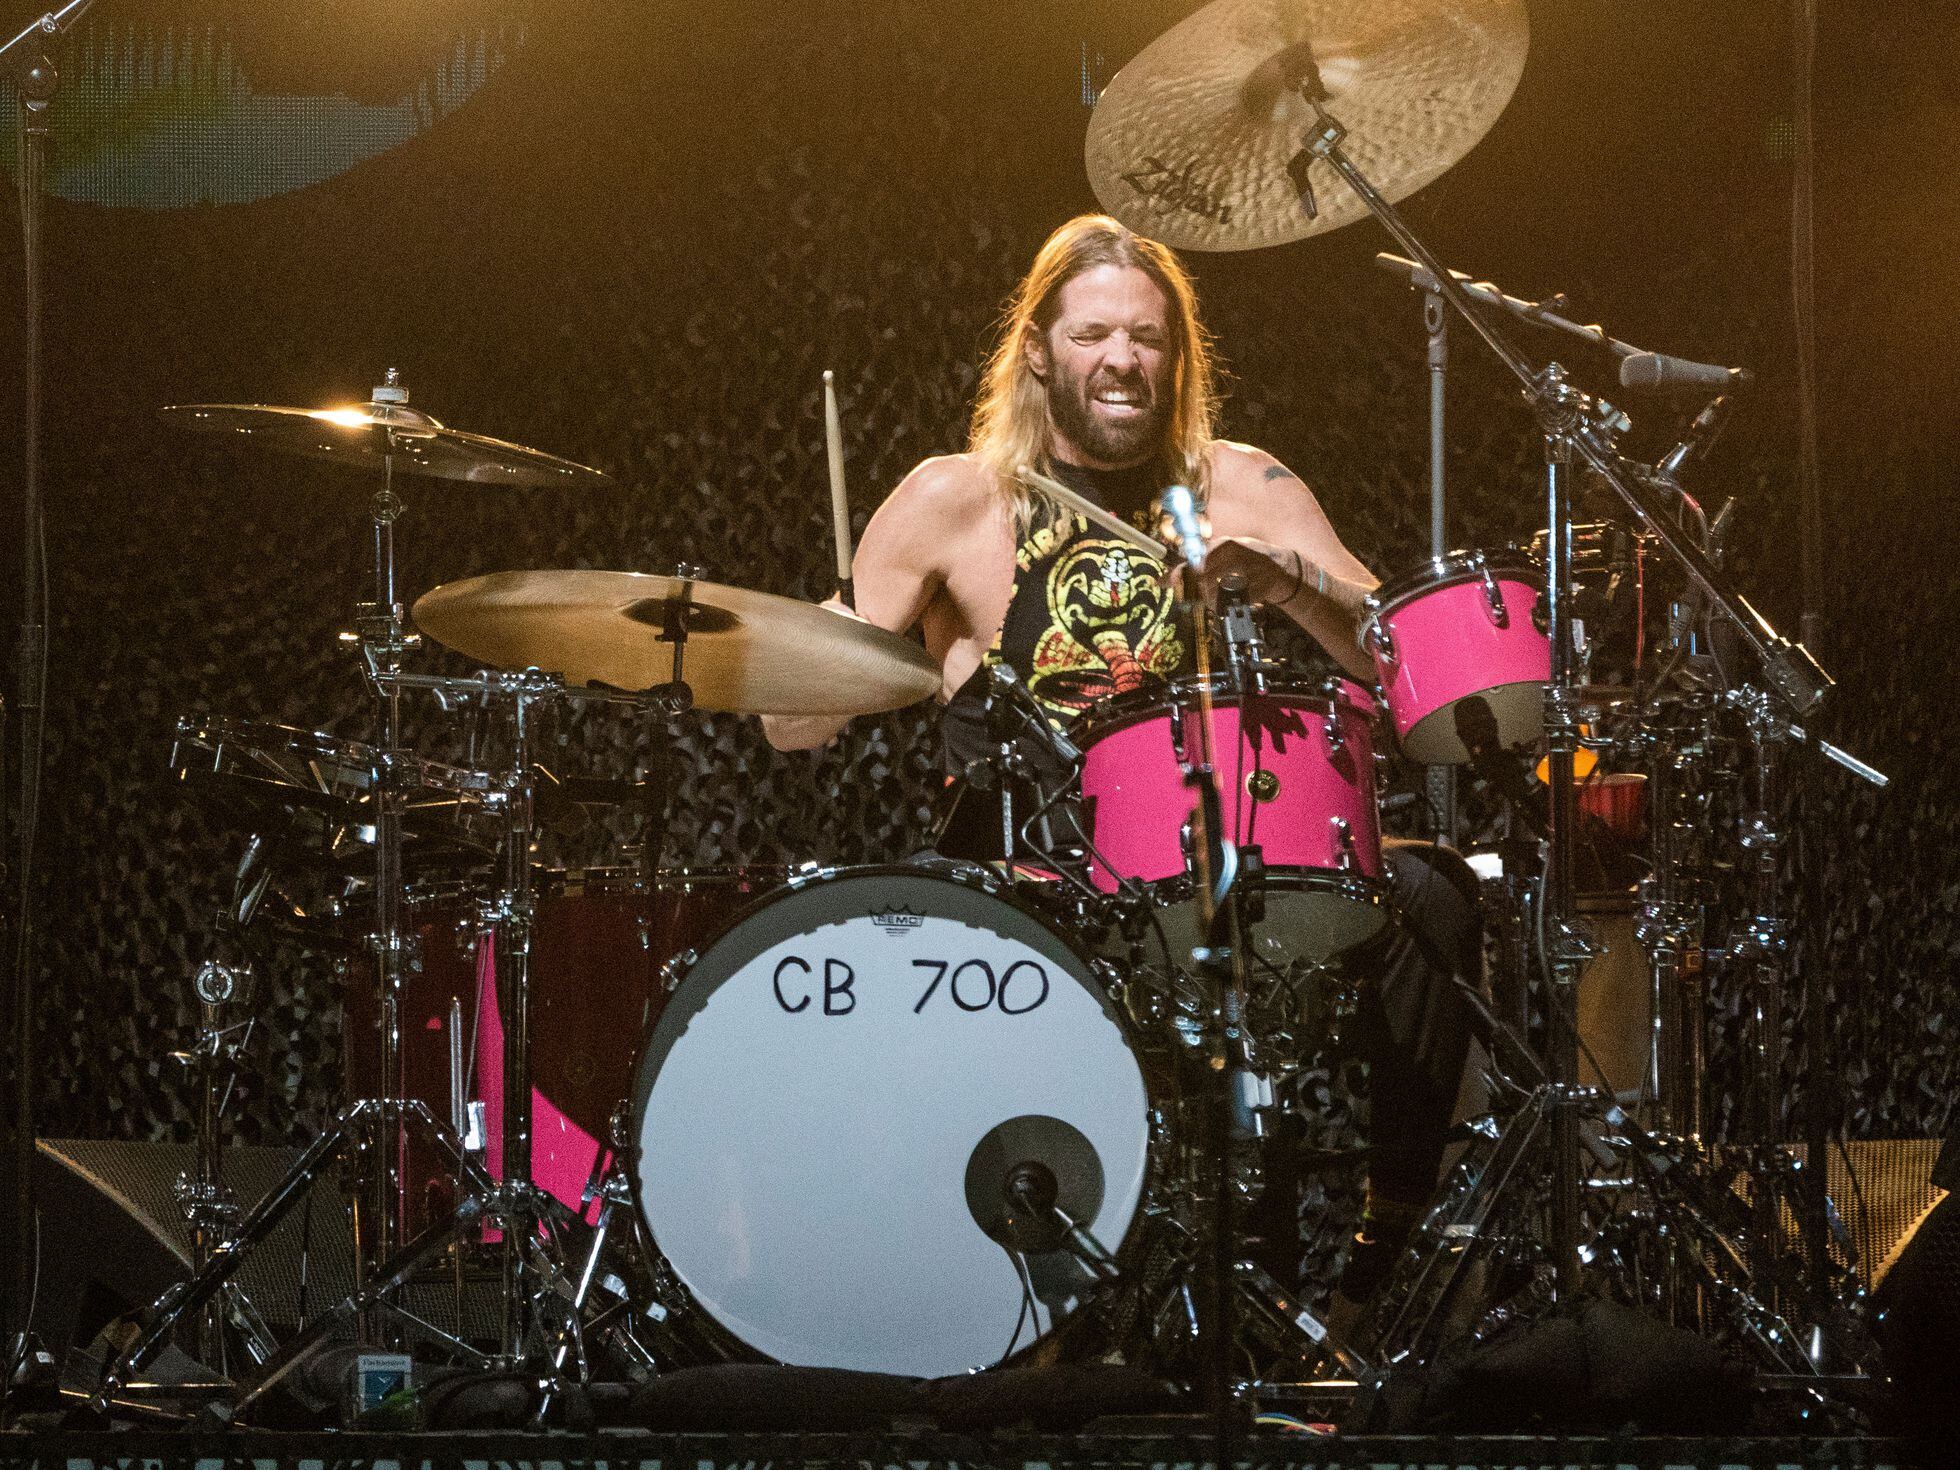 Muere Taylor Hawkins, baterista de los Foo Fighters, horas antes de su  actuación en un festival en Bogotá | Cultura | EL PAÍS